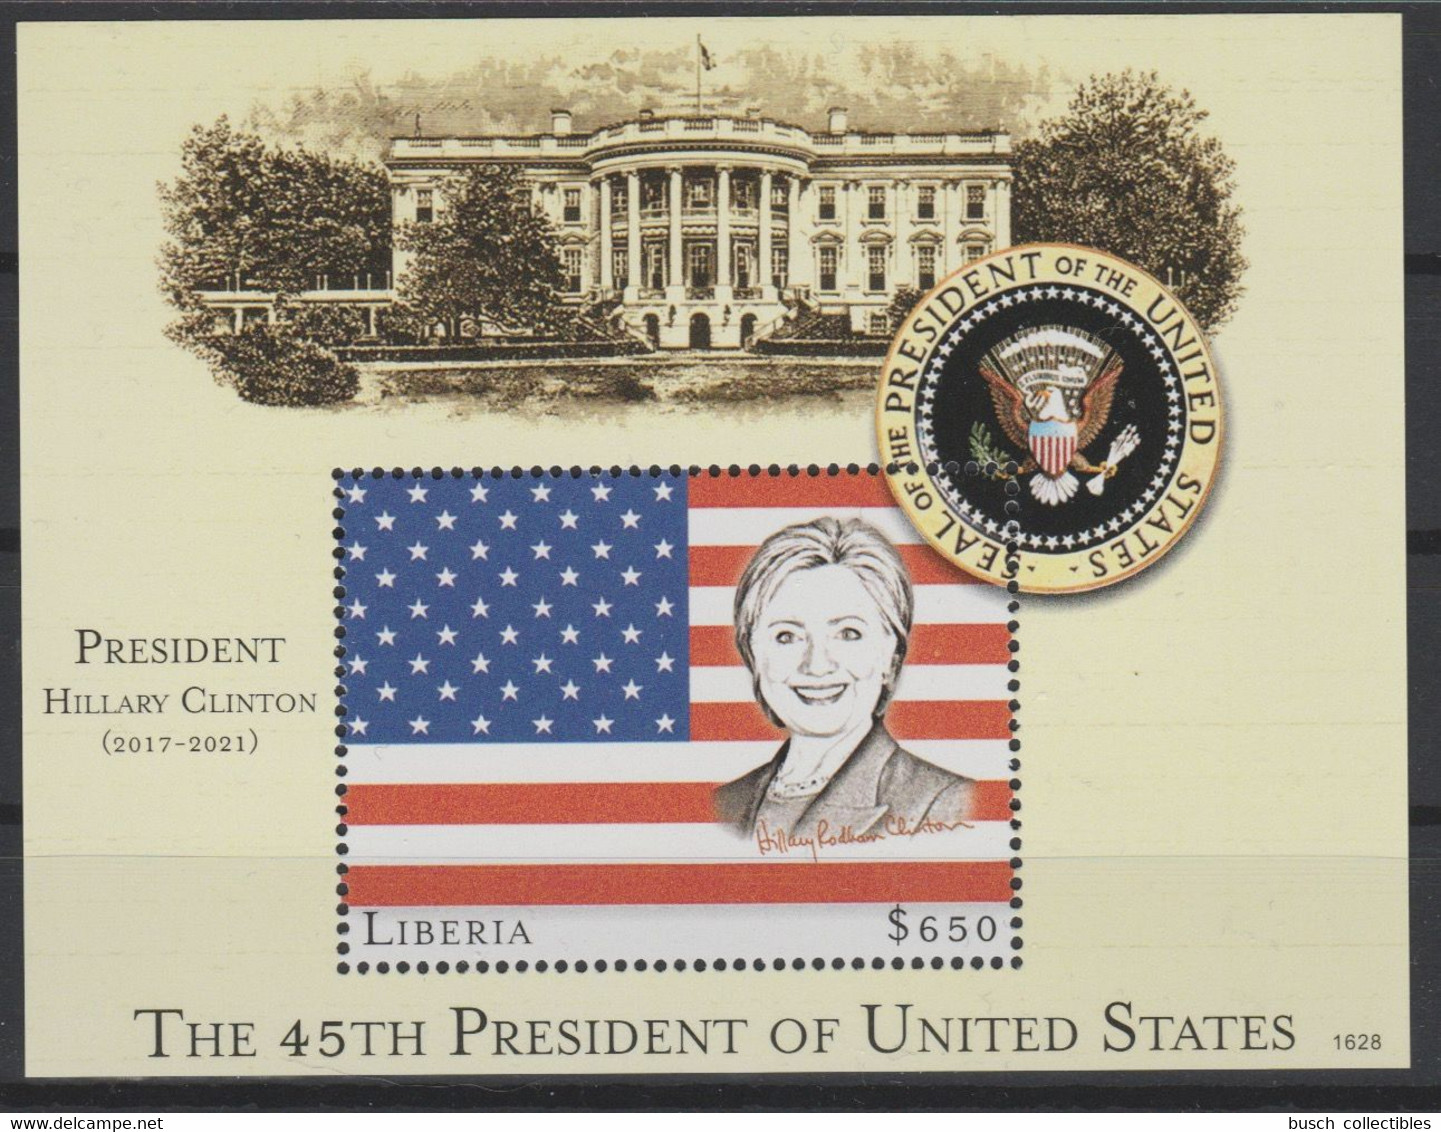 Liberia 2016 Mi. Bl. 754 UNISSUED NON EMIS Hillary Clinton 45th President United States White House Flag Stars Stripes - Stamps